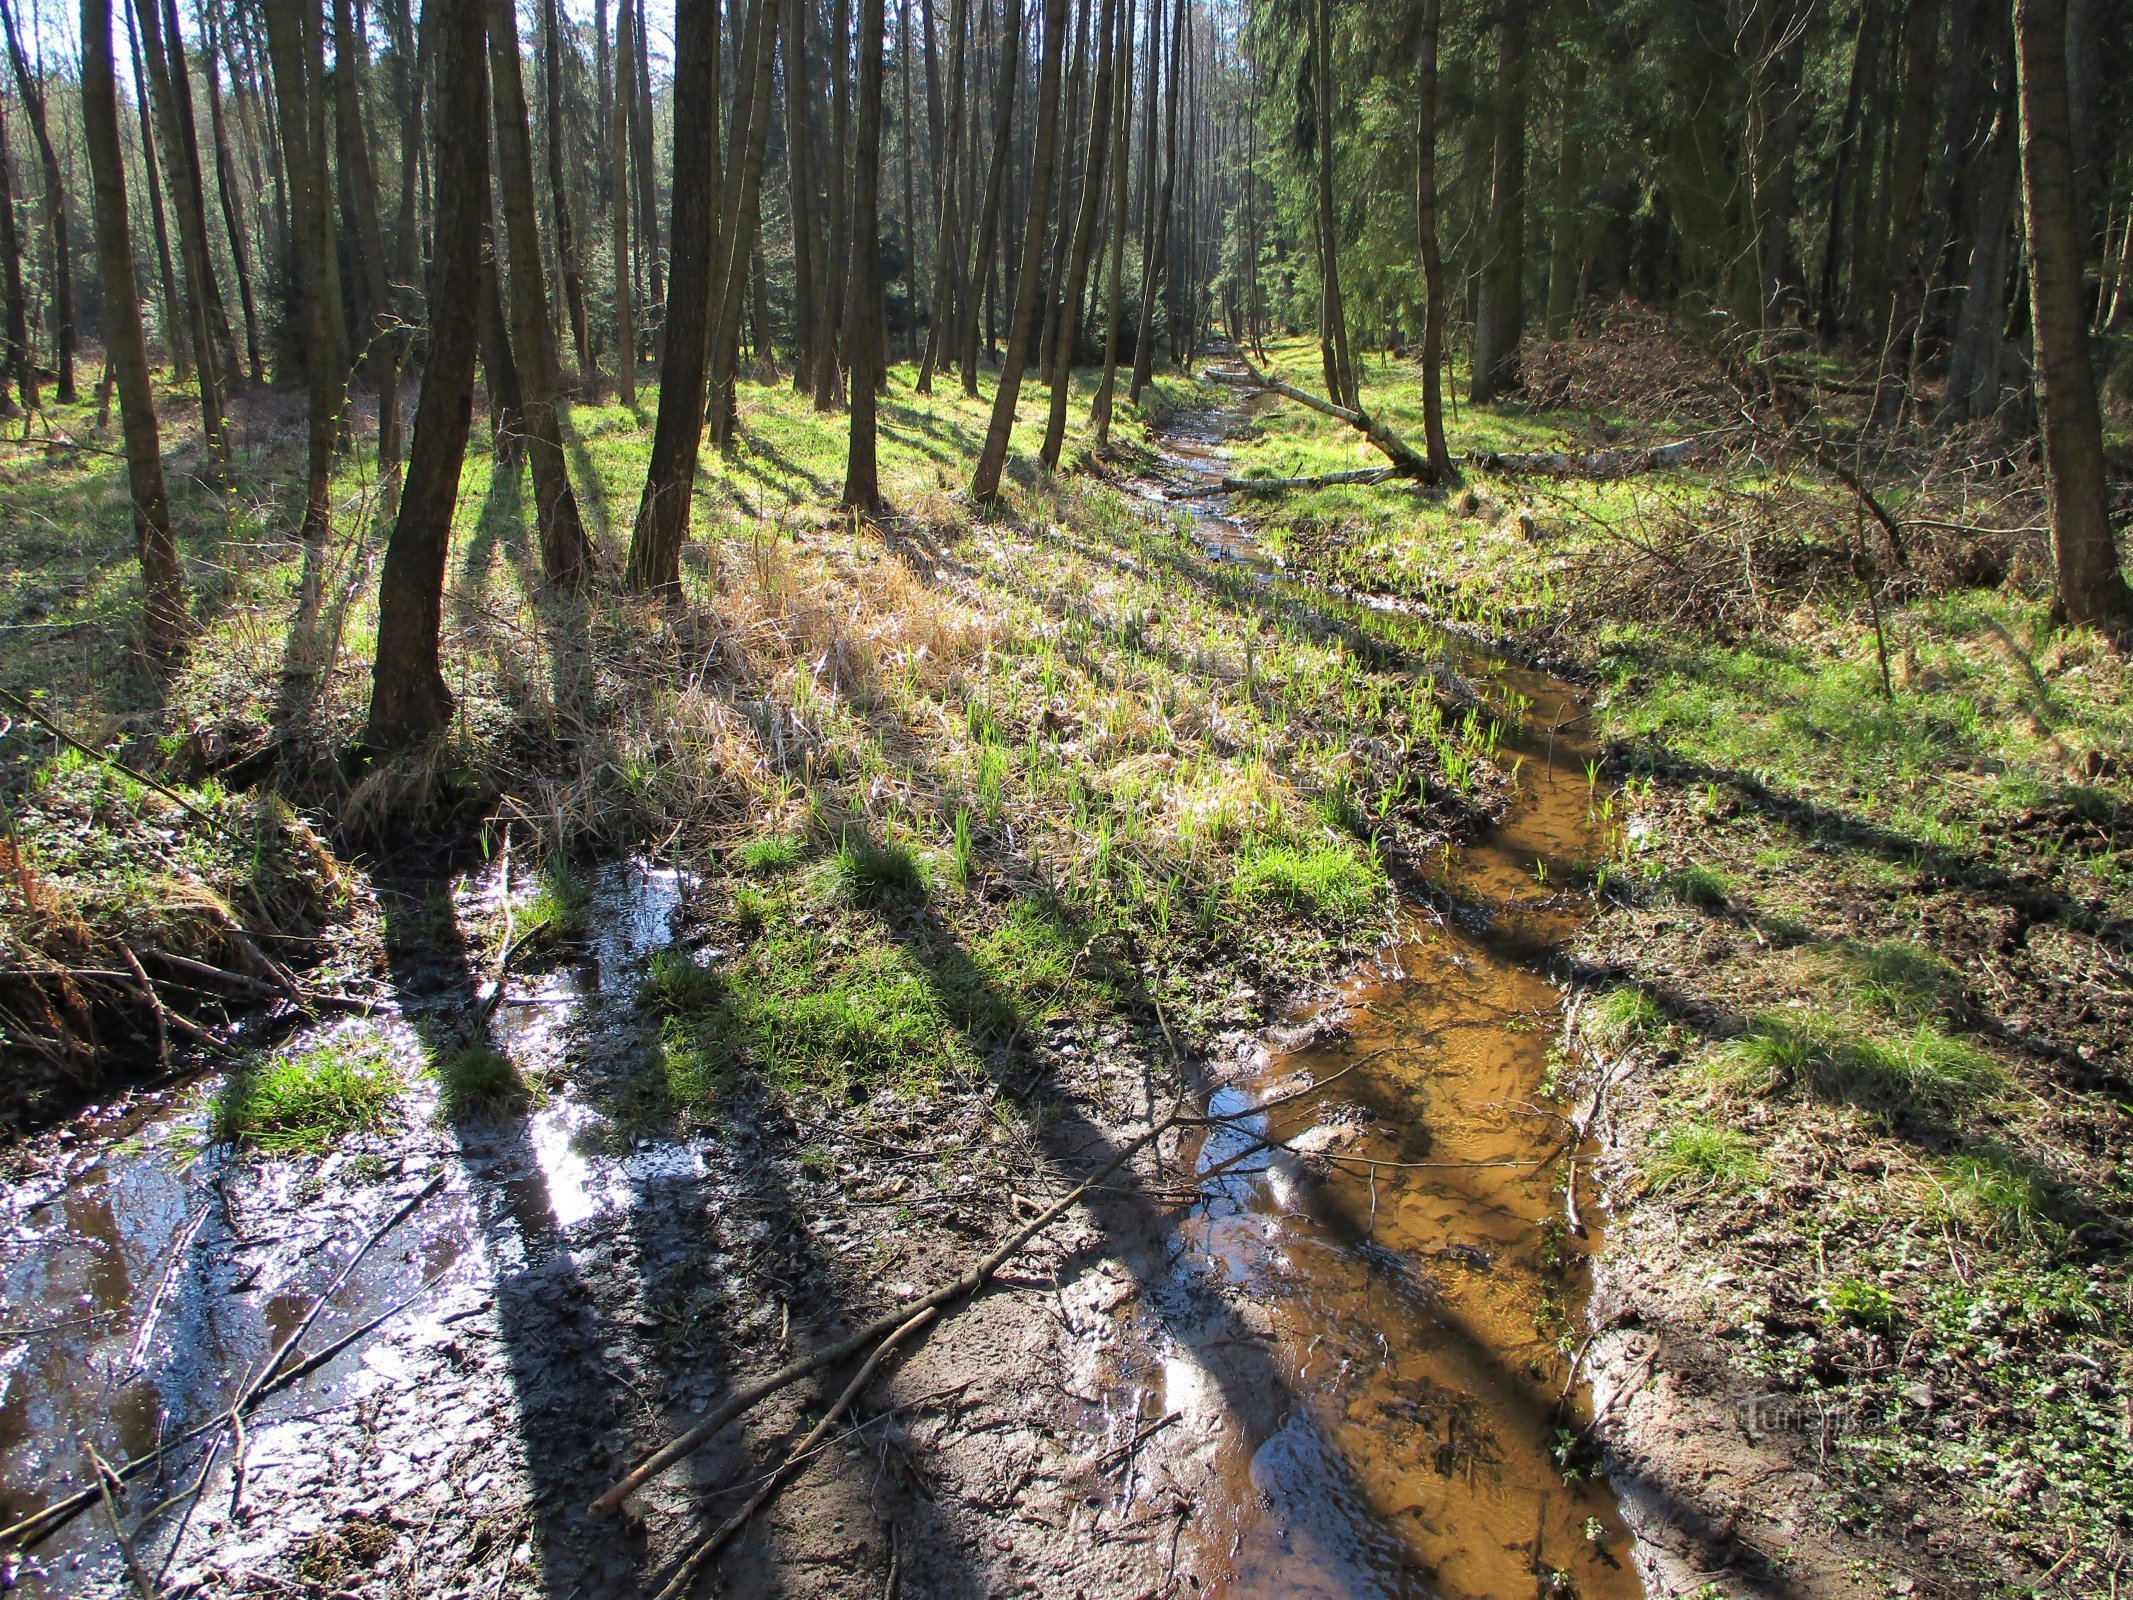 Il torrente Biřička prima di entrare nello stagno omonimo (Nový Hradec Králové, 8.4.2020 aprile XNUMX)